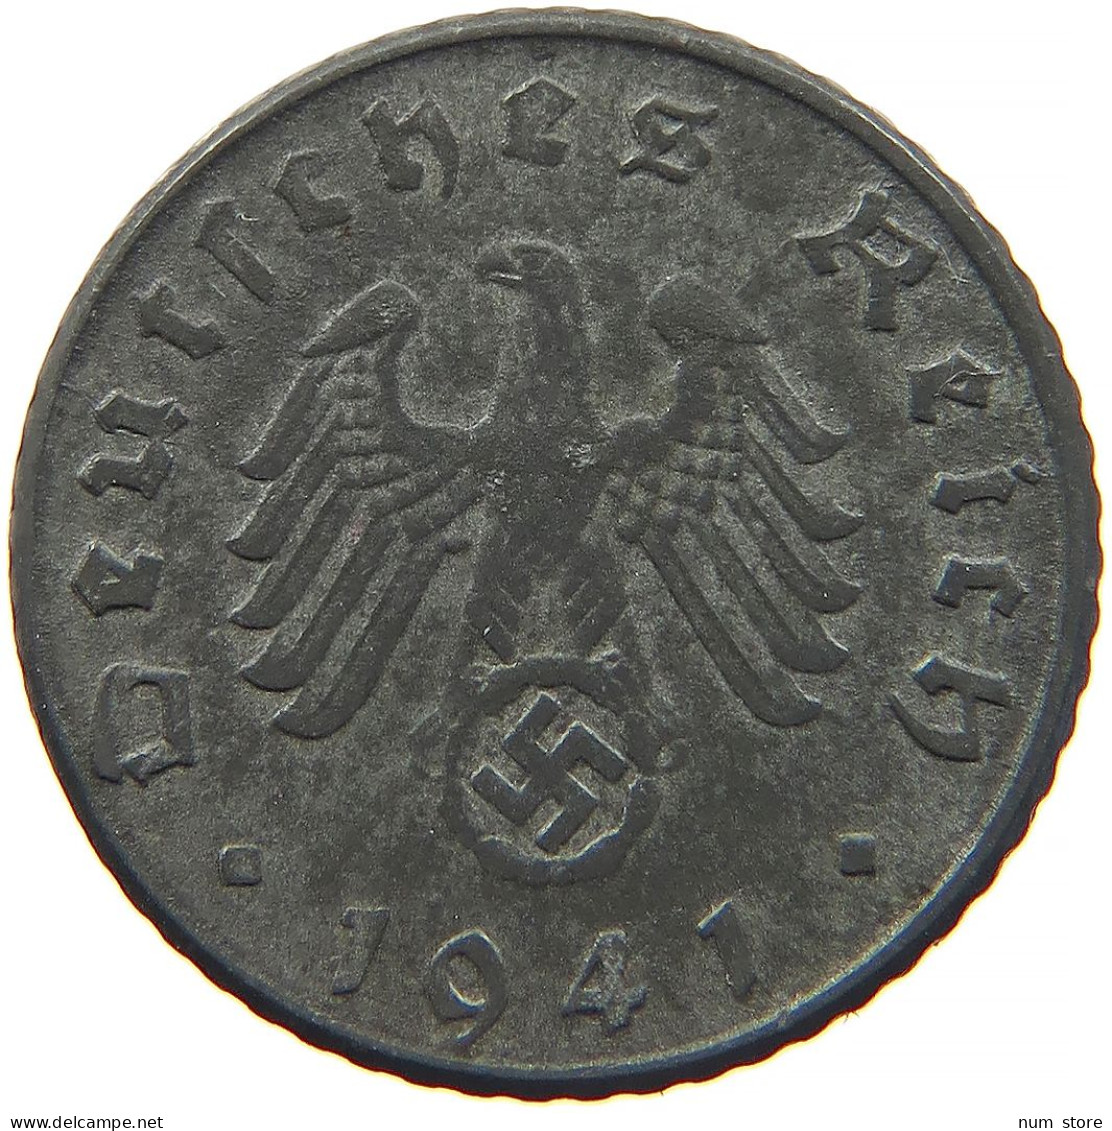 GERMANY 5 REICHSPFENNIG 1941 D #s091 0881 - 5 Reichspfennig